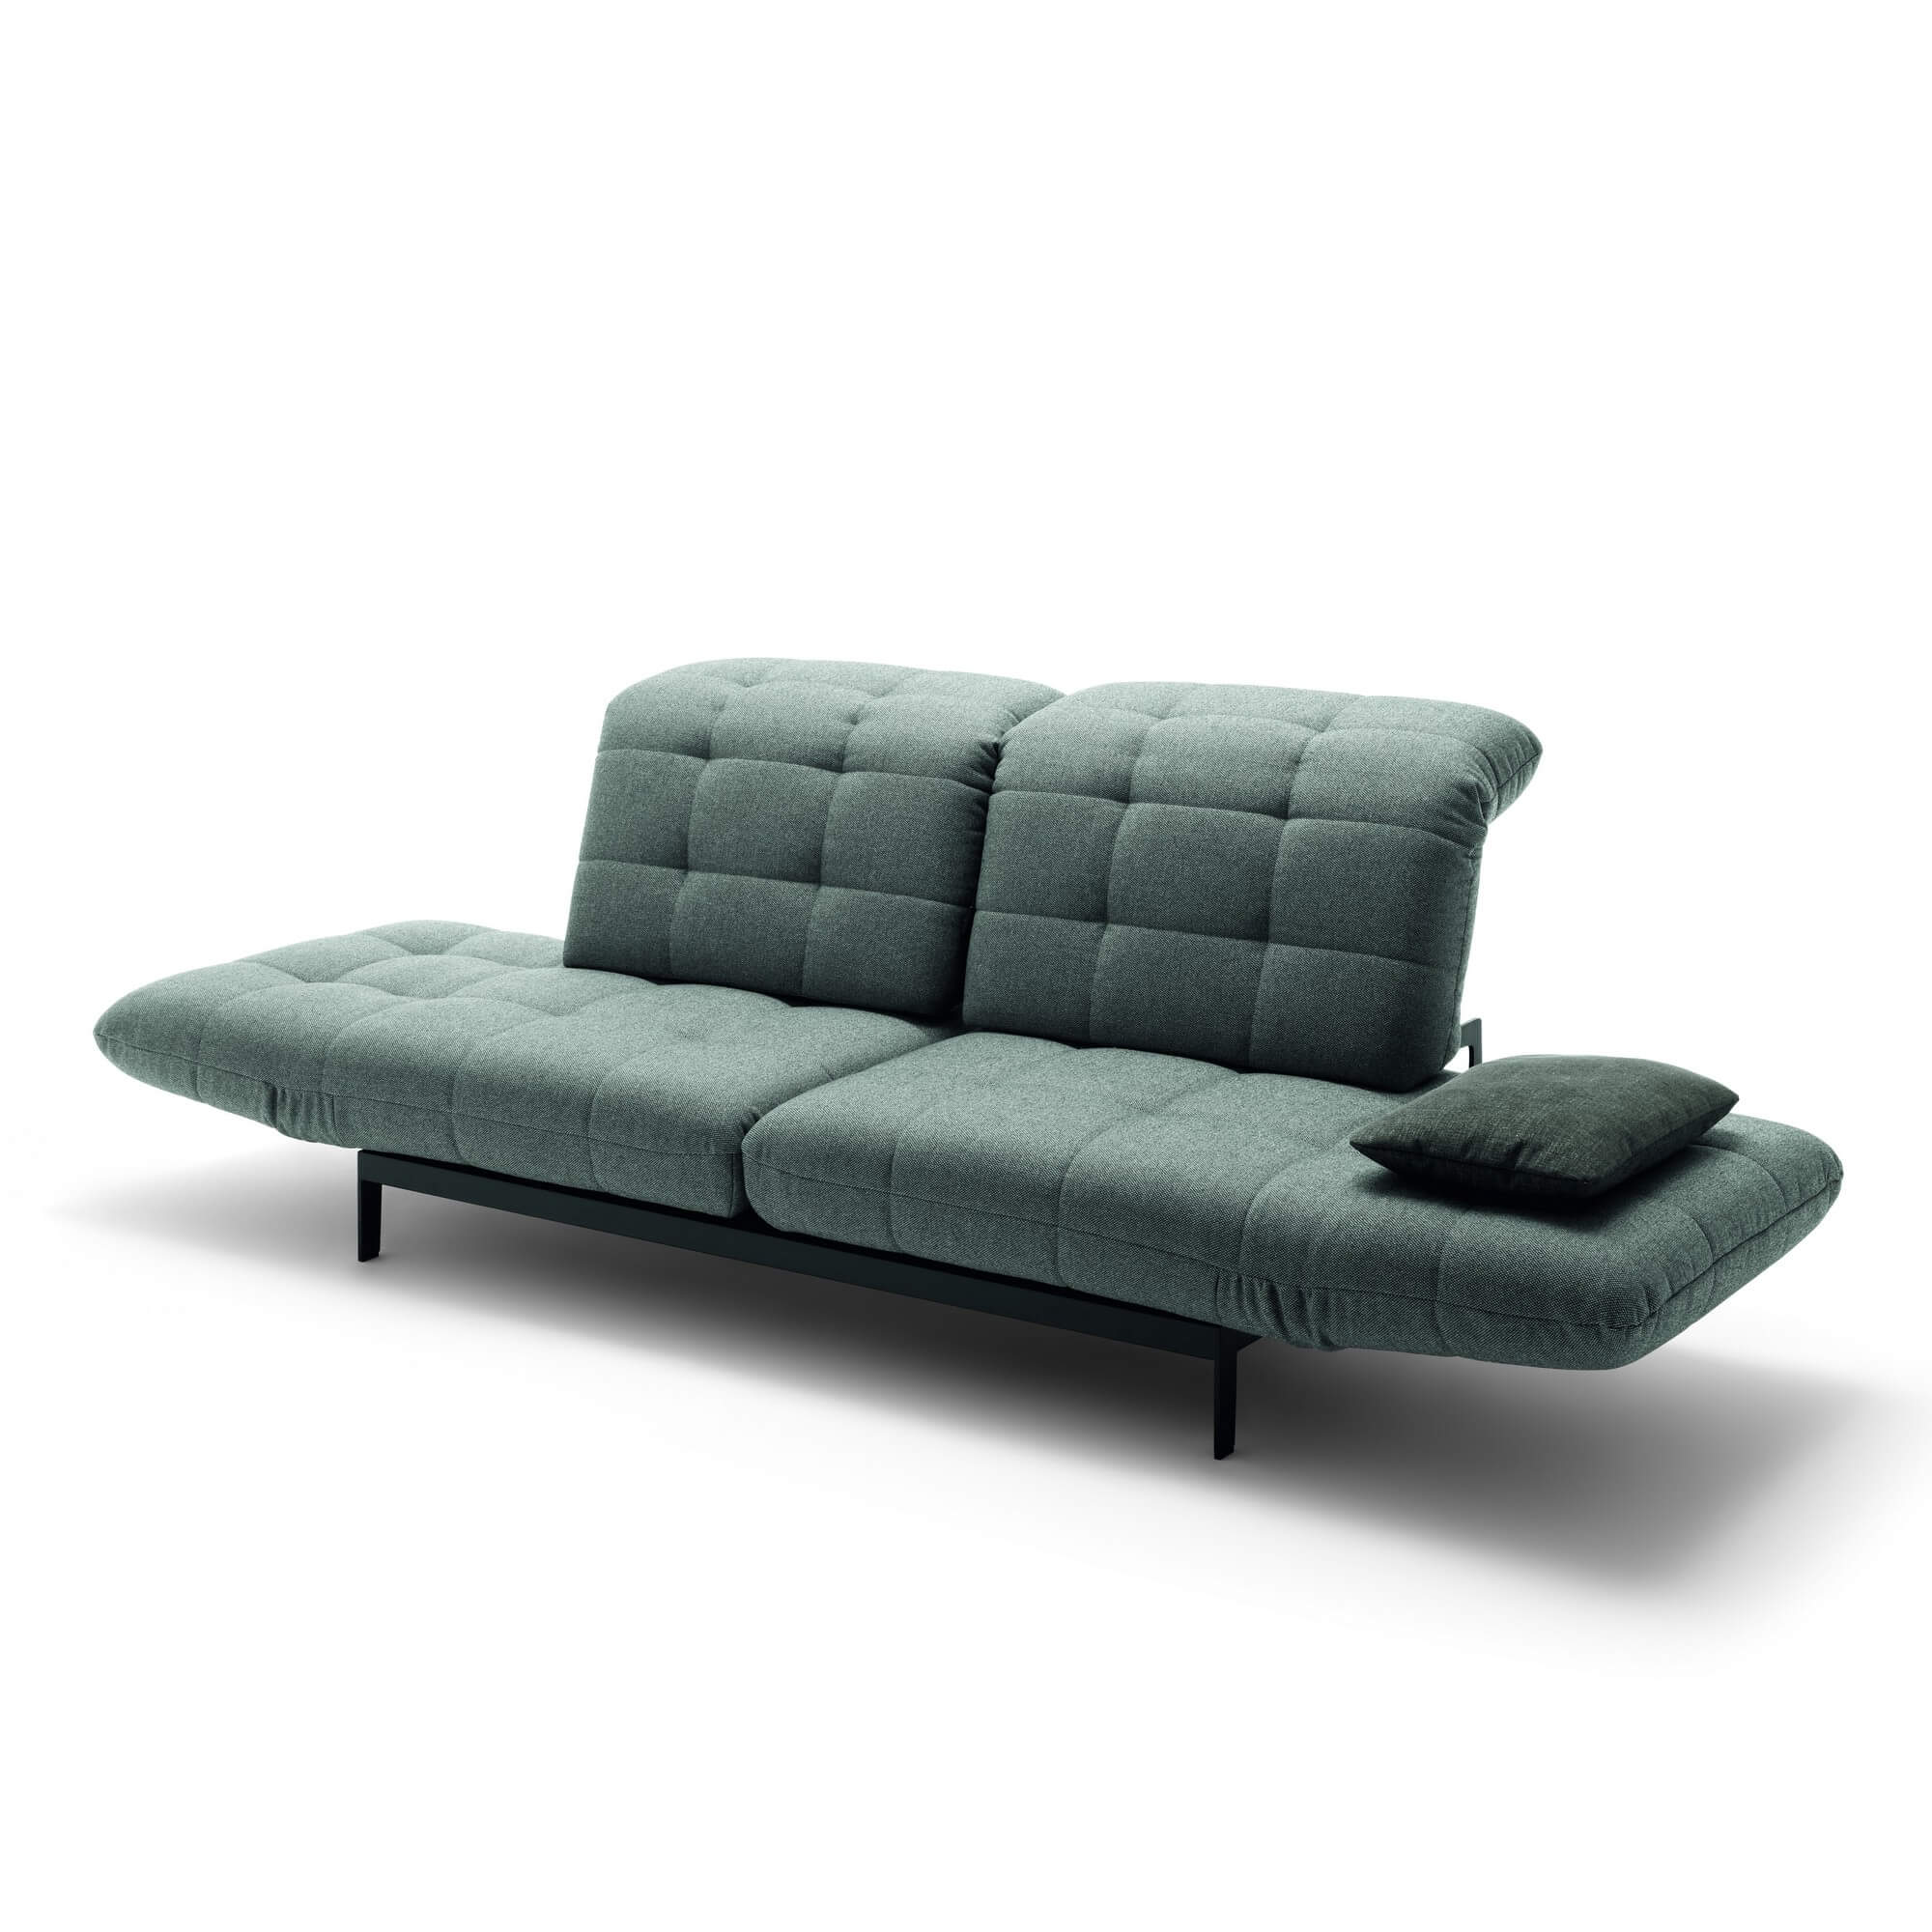 Дизайнерский диван на высоких ножках Rolf Benz Agio из Германии